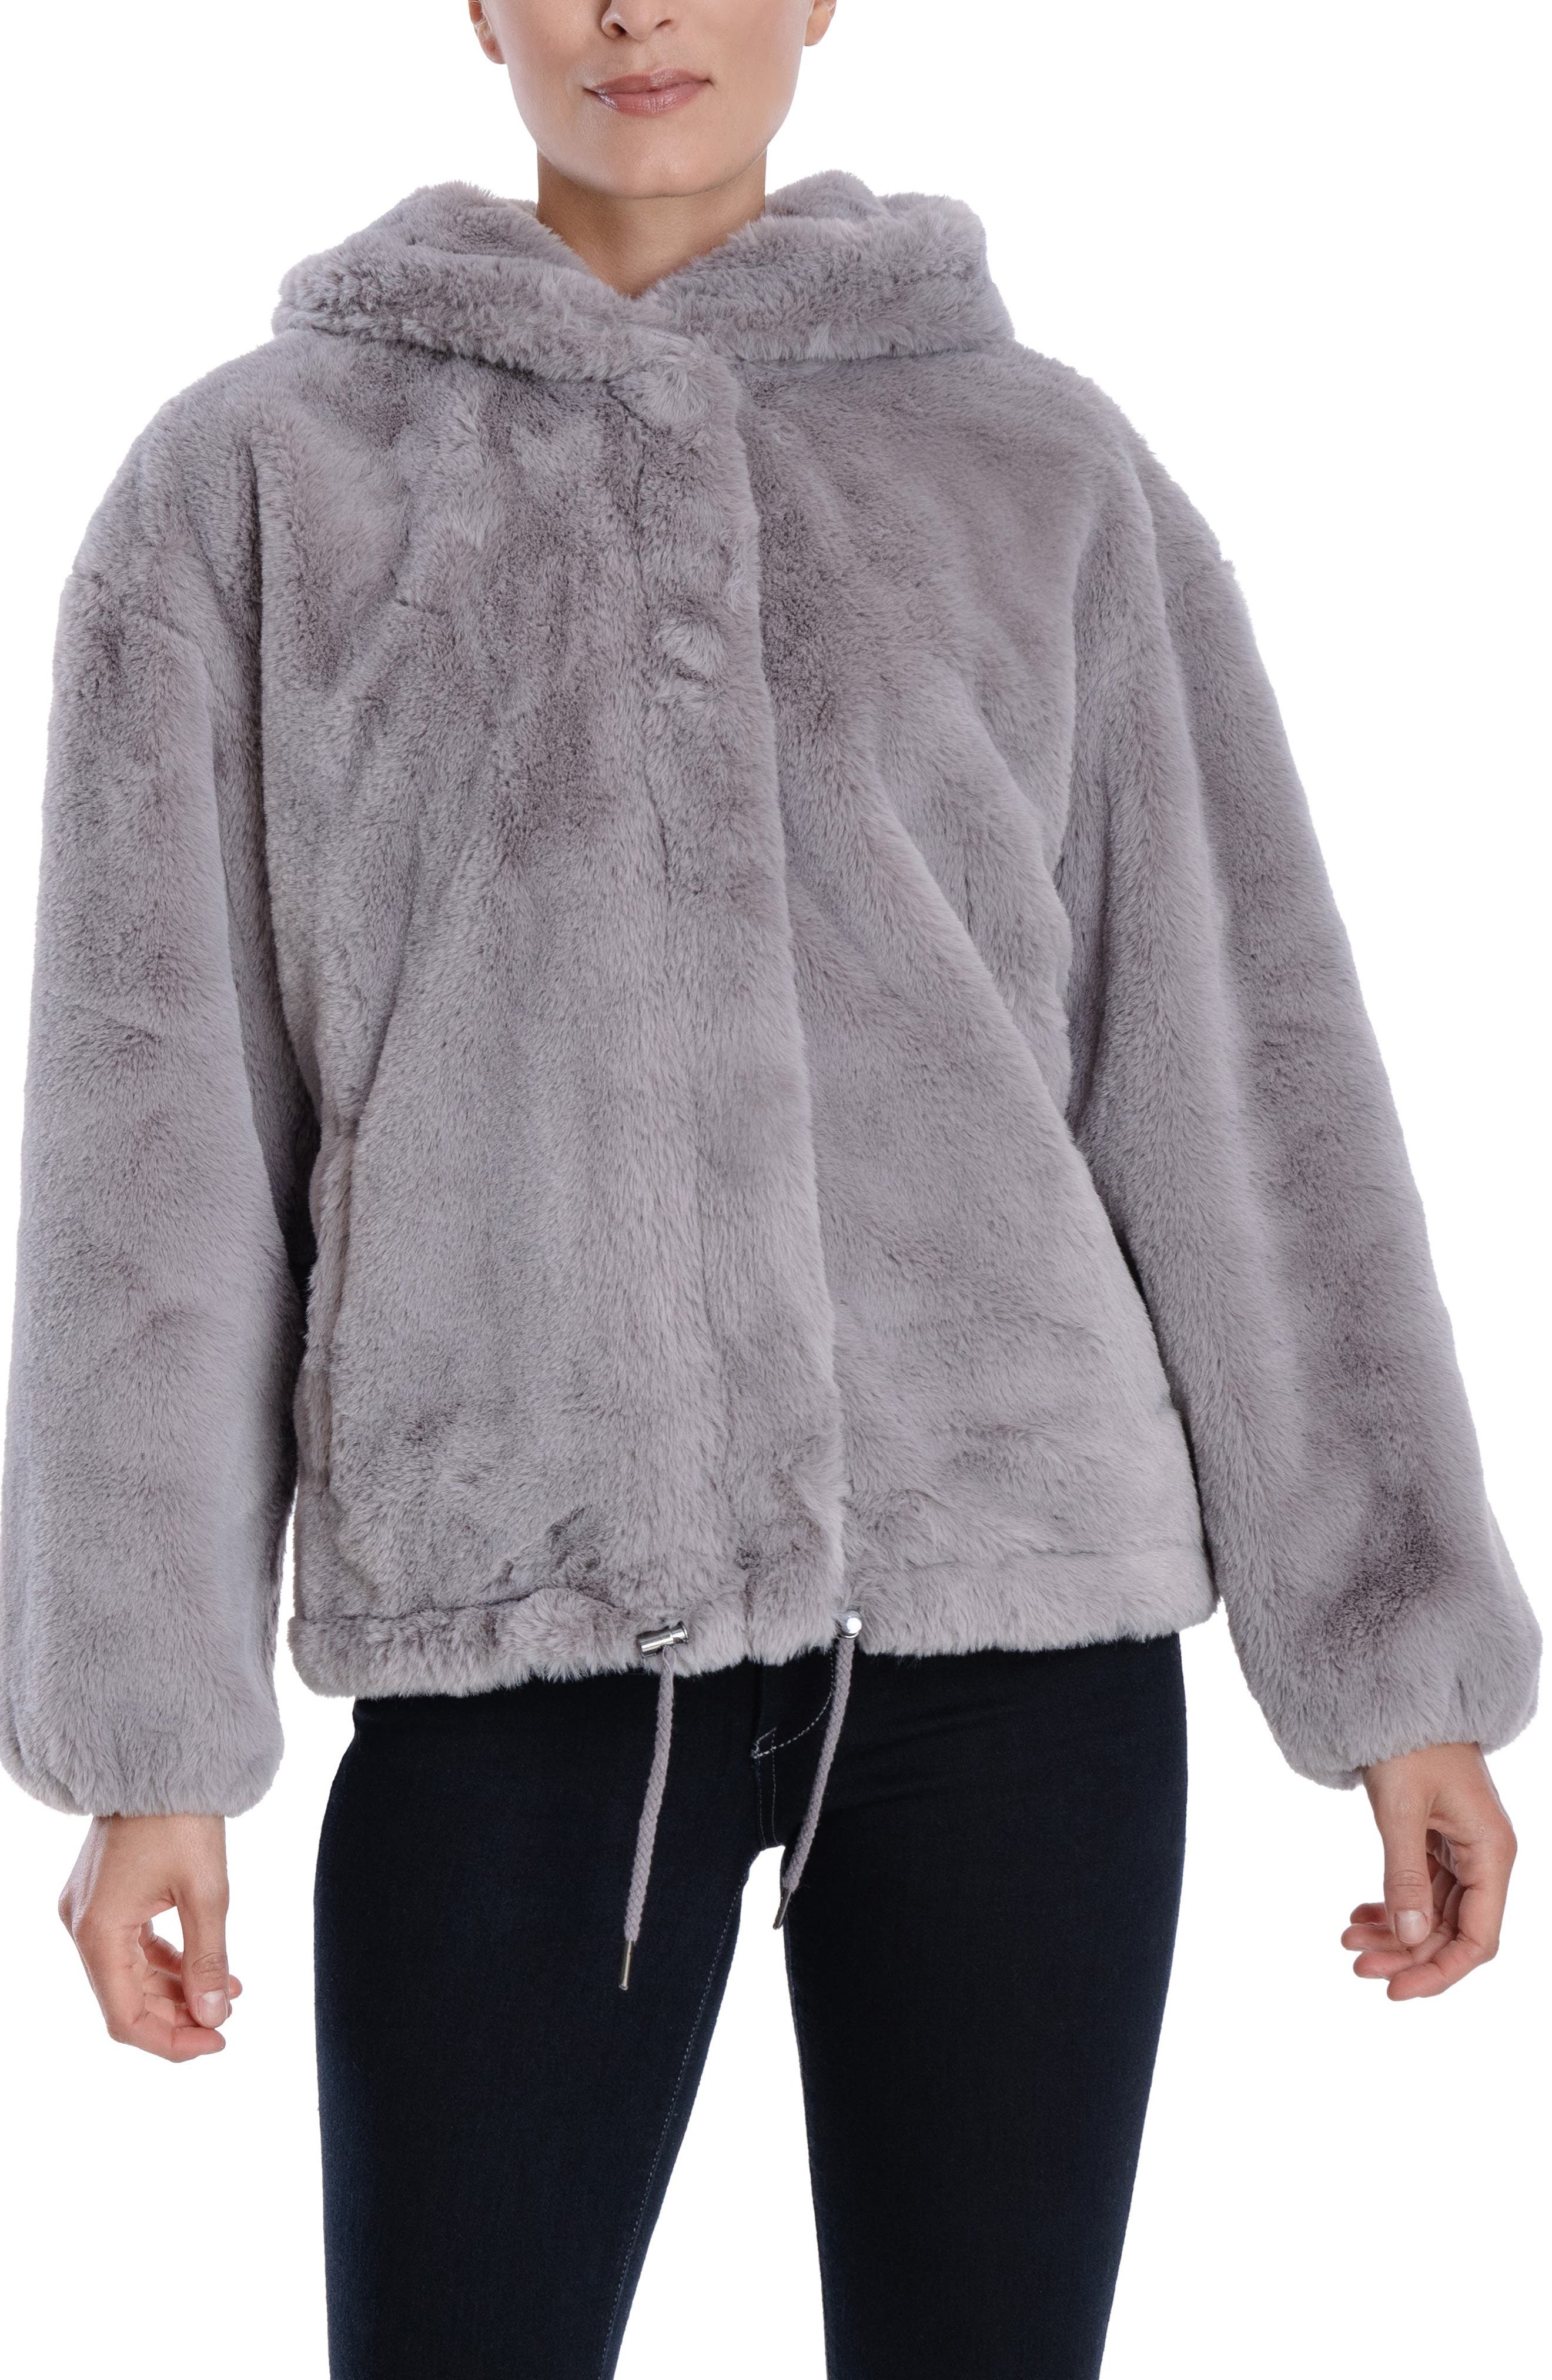 Women Teddy Bear Winter Fleece Faux Fur Fluffy Coat Jacket Jumper Long Outwear M